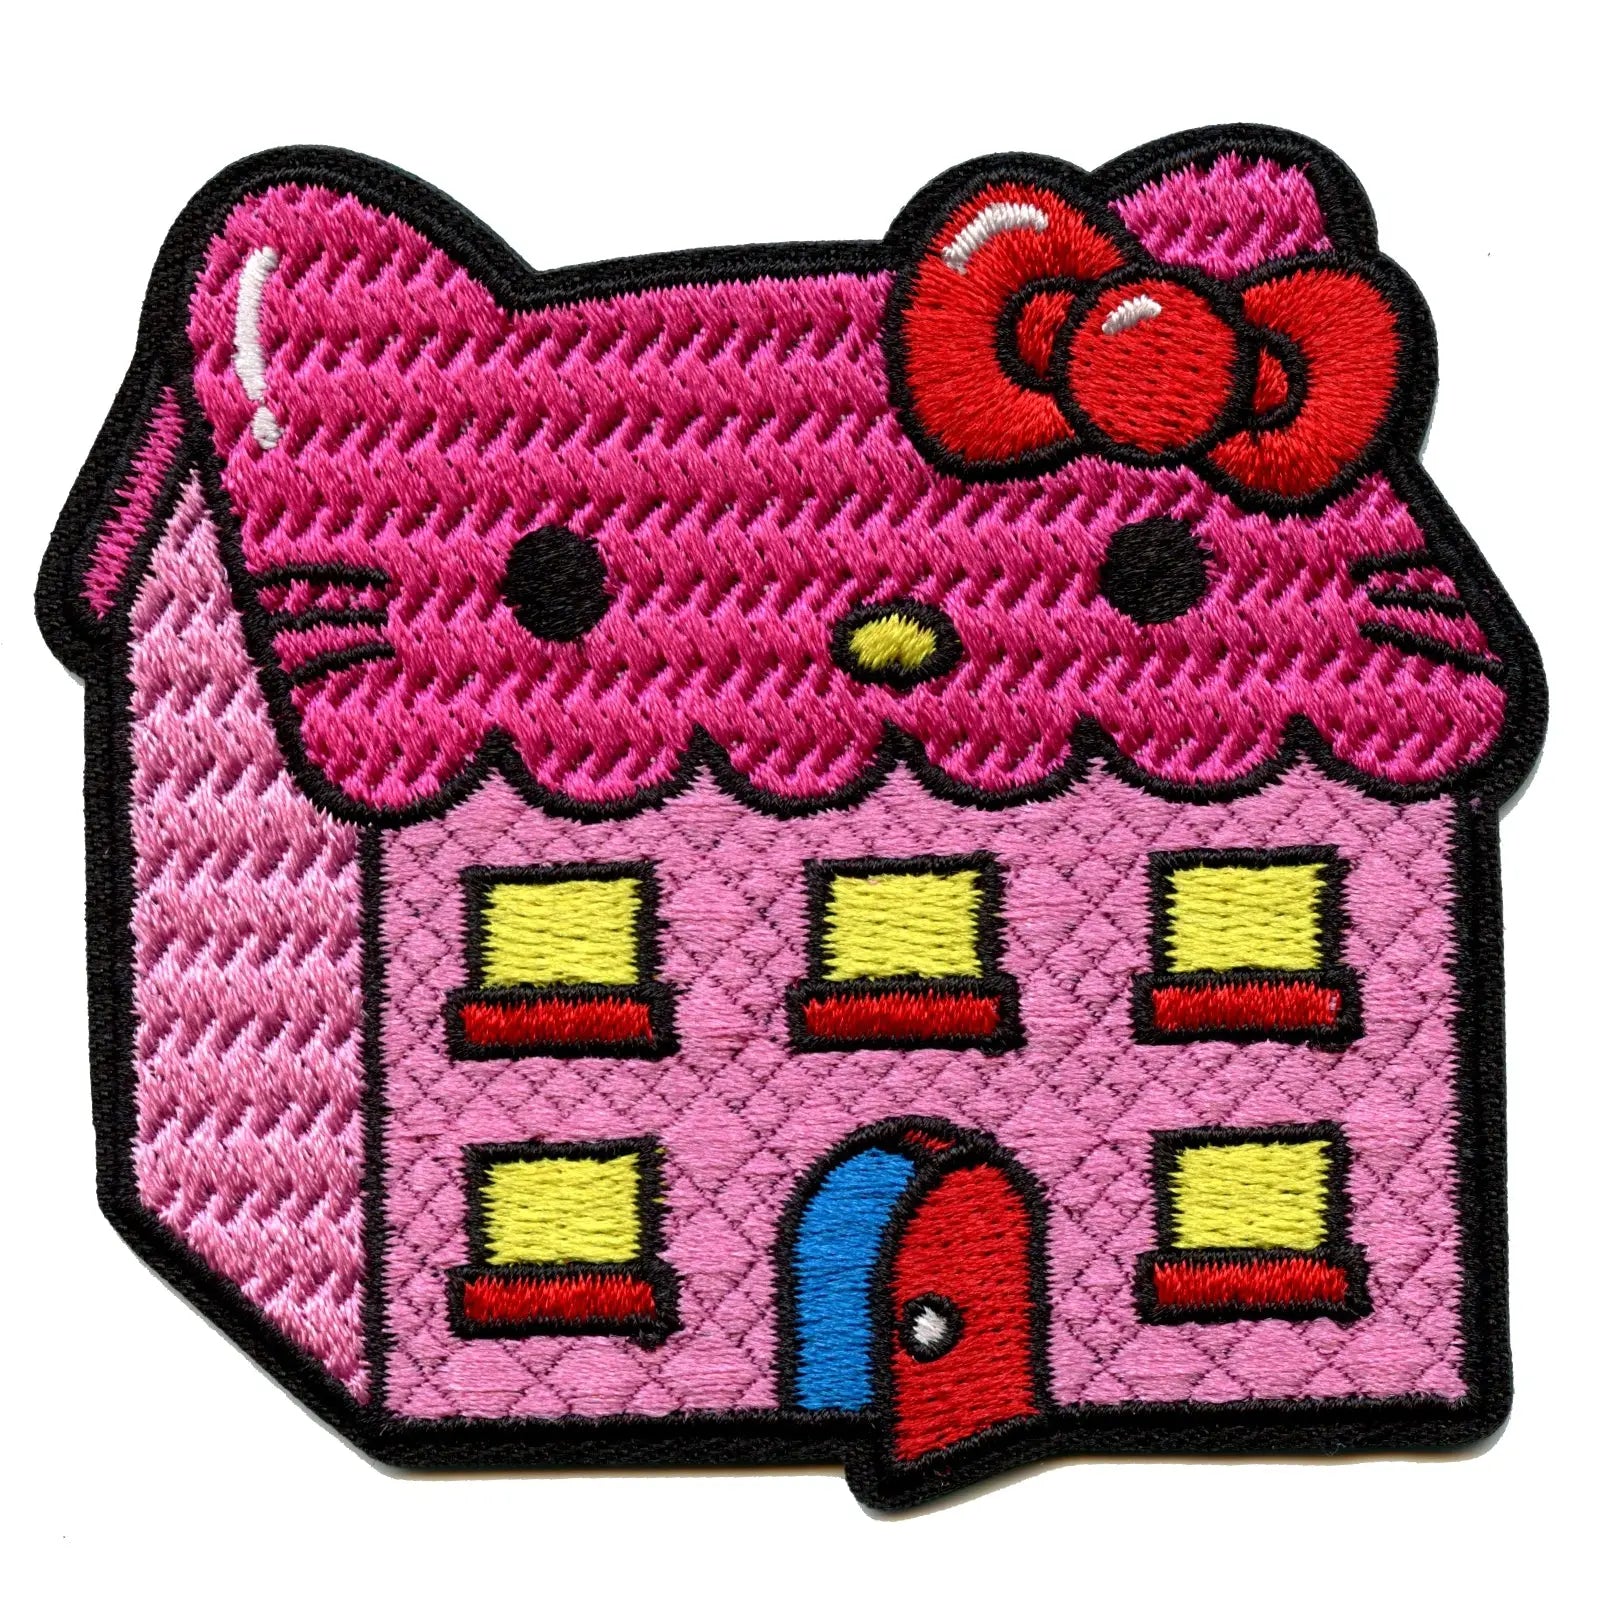 ONE Hello Sanrio Hello Kitty House iron on patch.